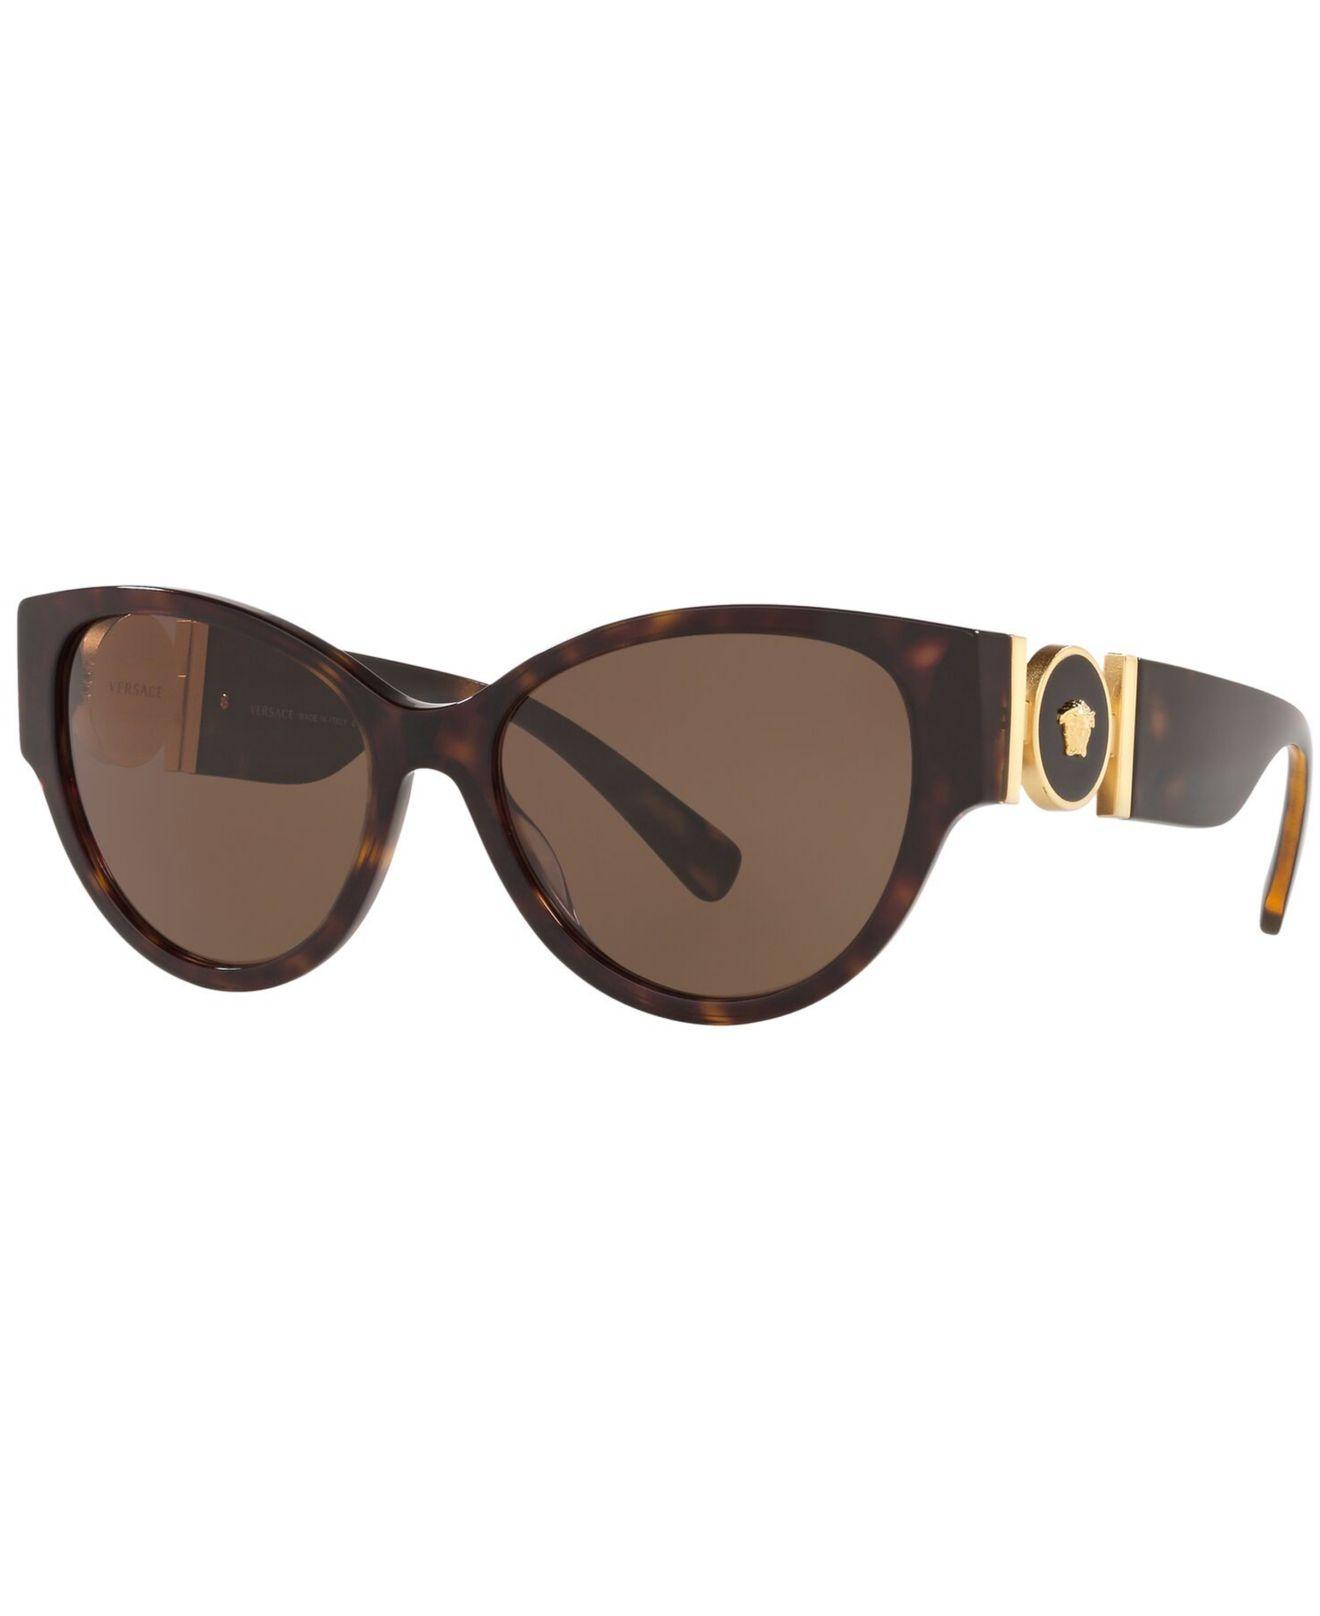 Versace 56mm Cat Eye Sunglasses - Havana/ Brown Solid in Brown - Lyst